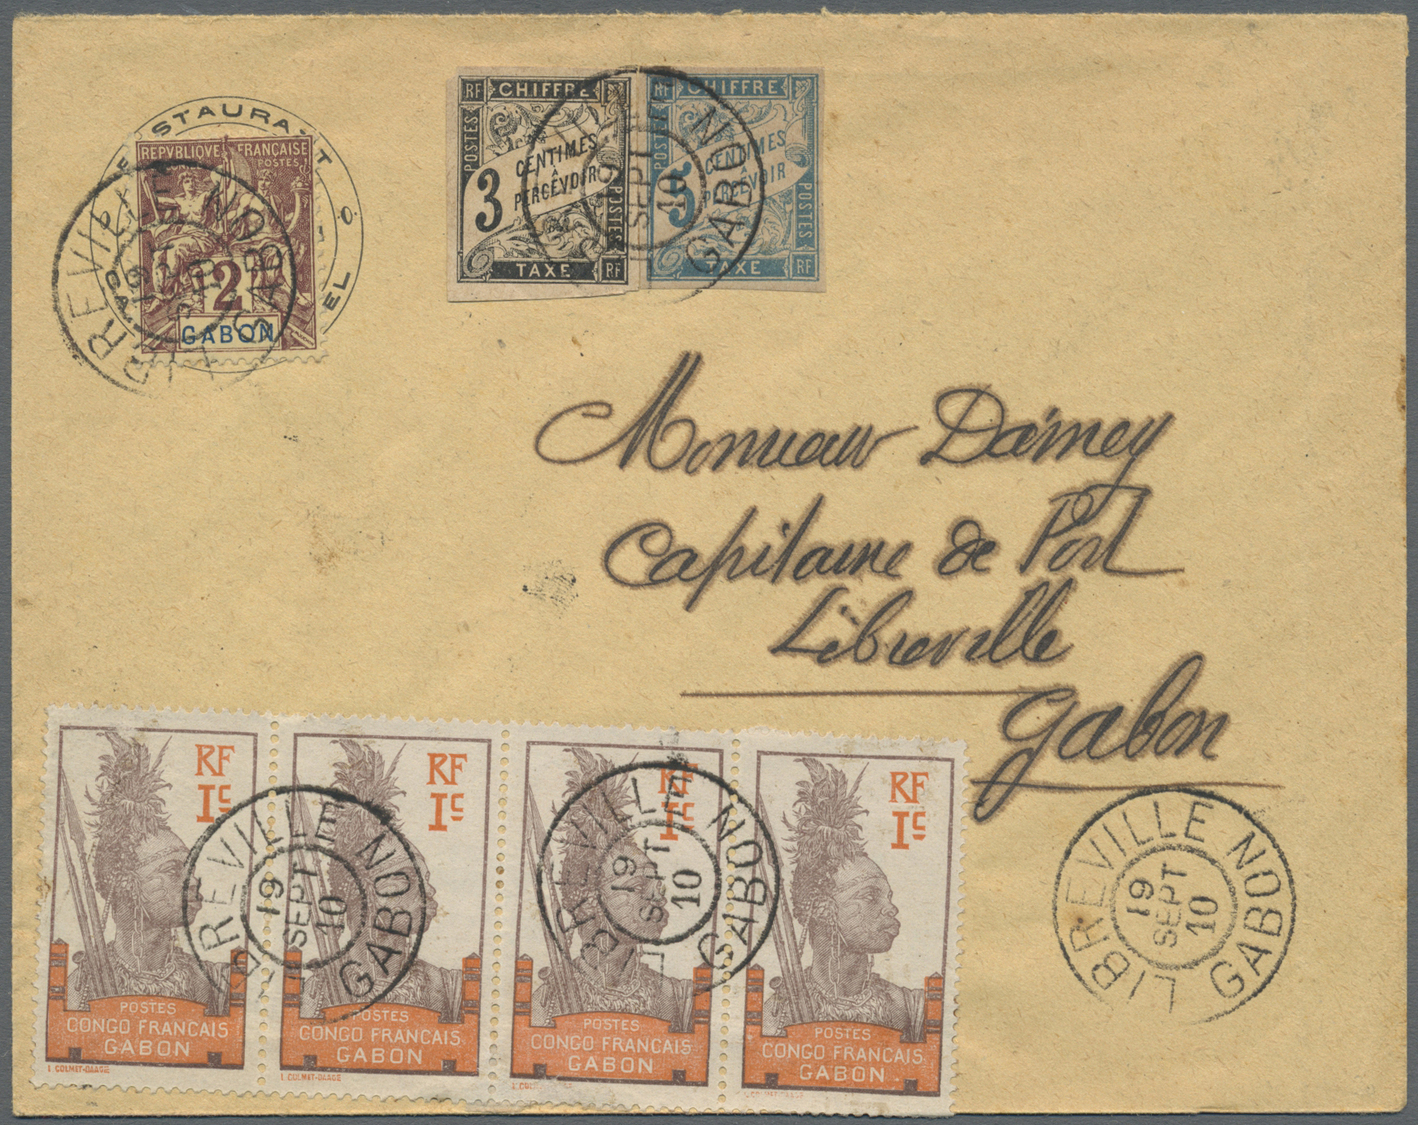 Br Gabun: 1910. Local Mail Envelope Addressed To Libreville, Gabon Bearing Yvert 17, 2c Lilac/brown And Yvert 33, 1c Bro - Gabon